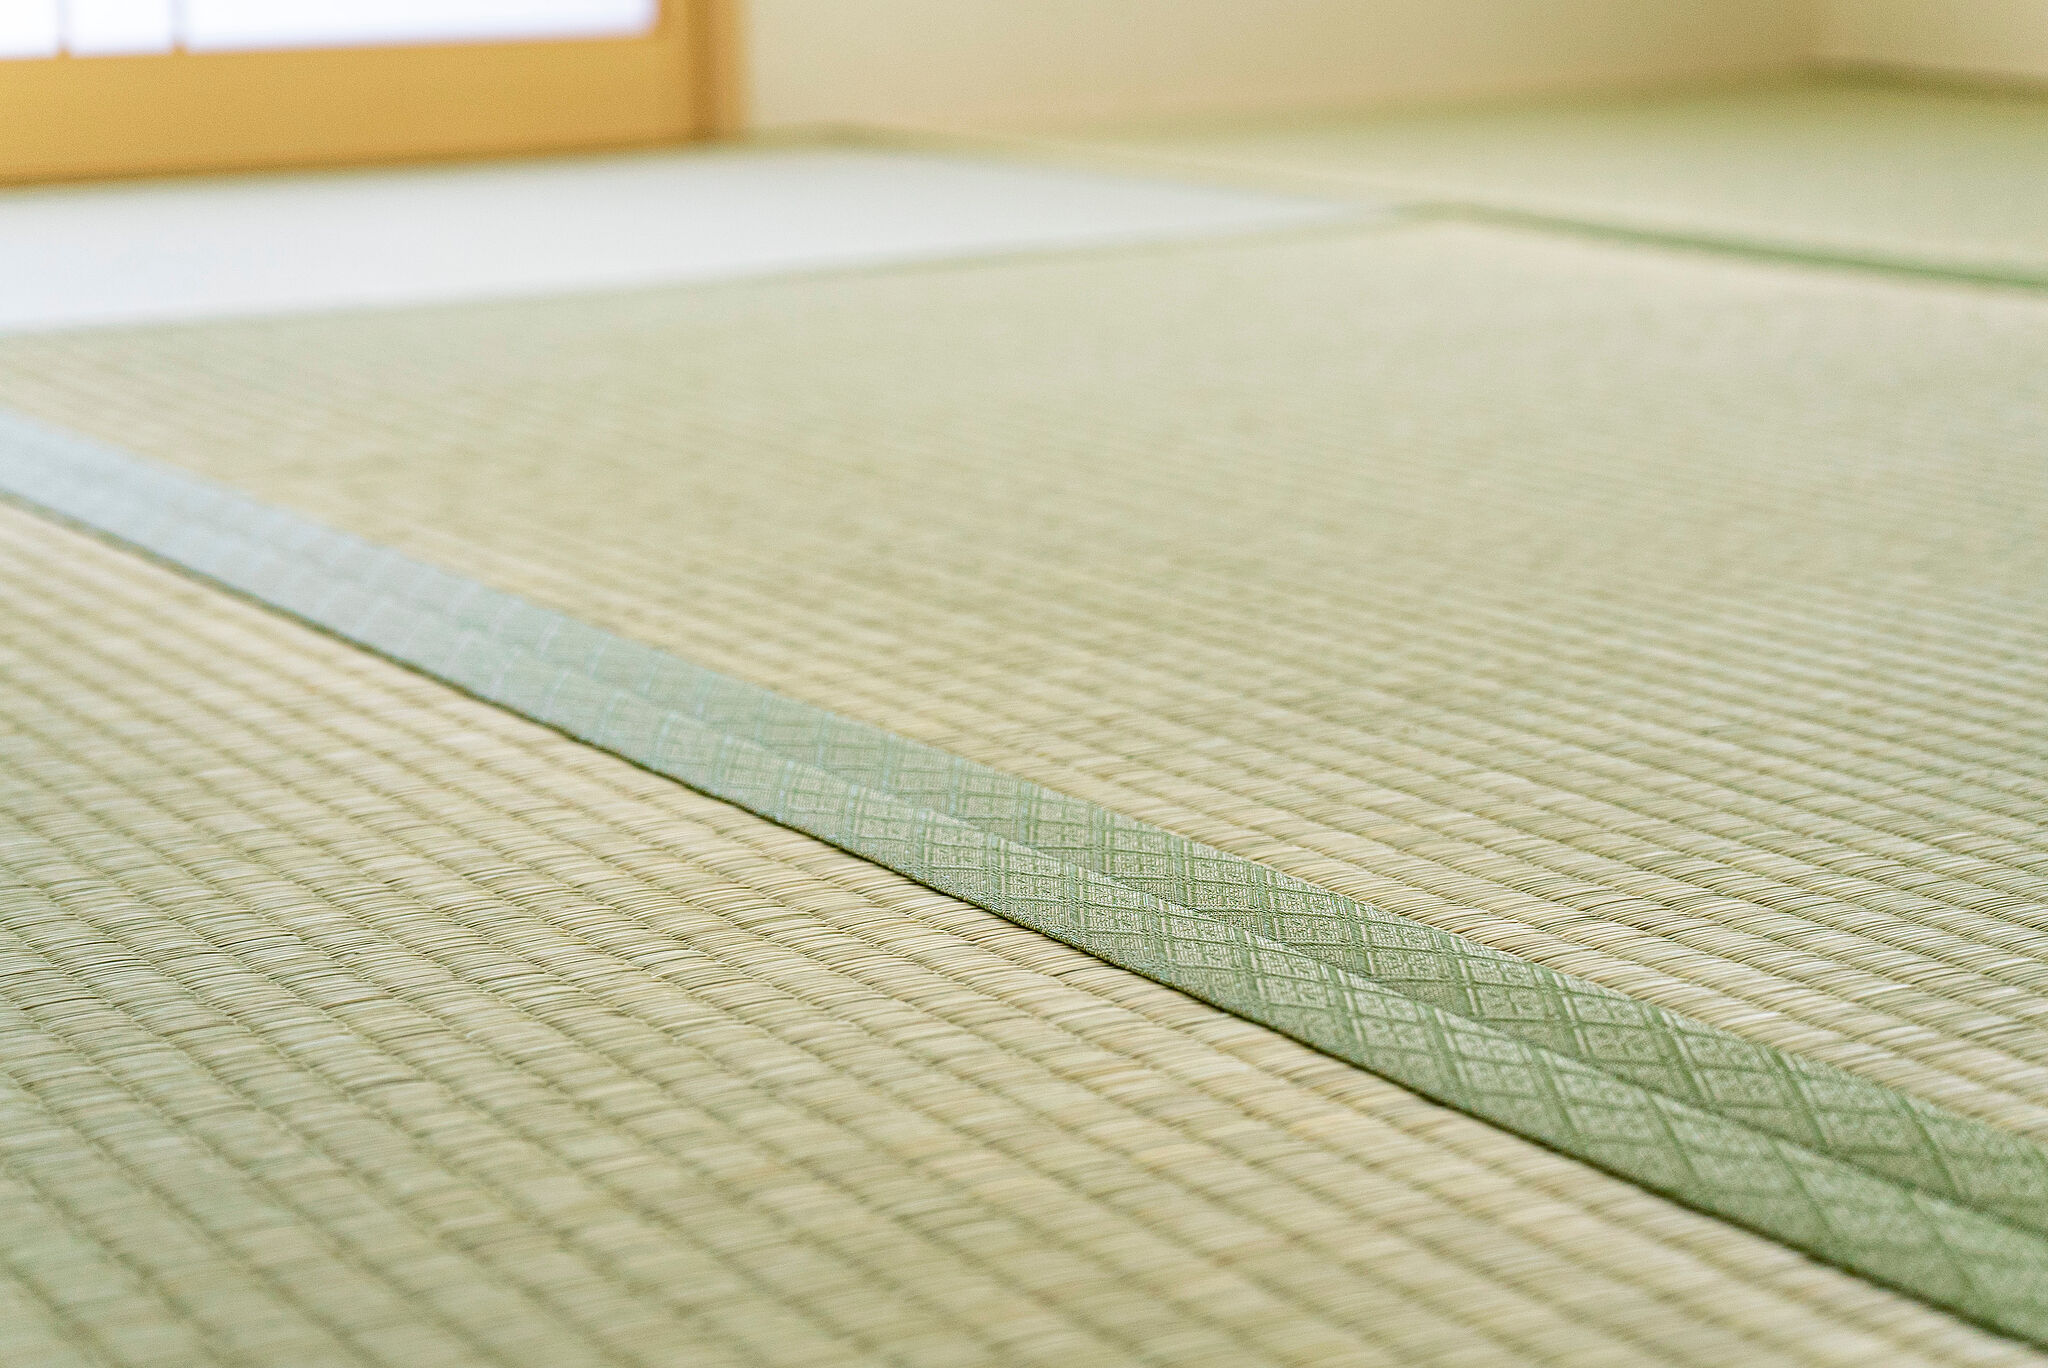 腰痛の方が畳の上でマットレスを使う際の注意点